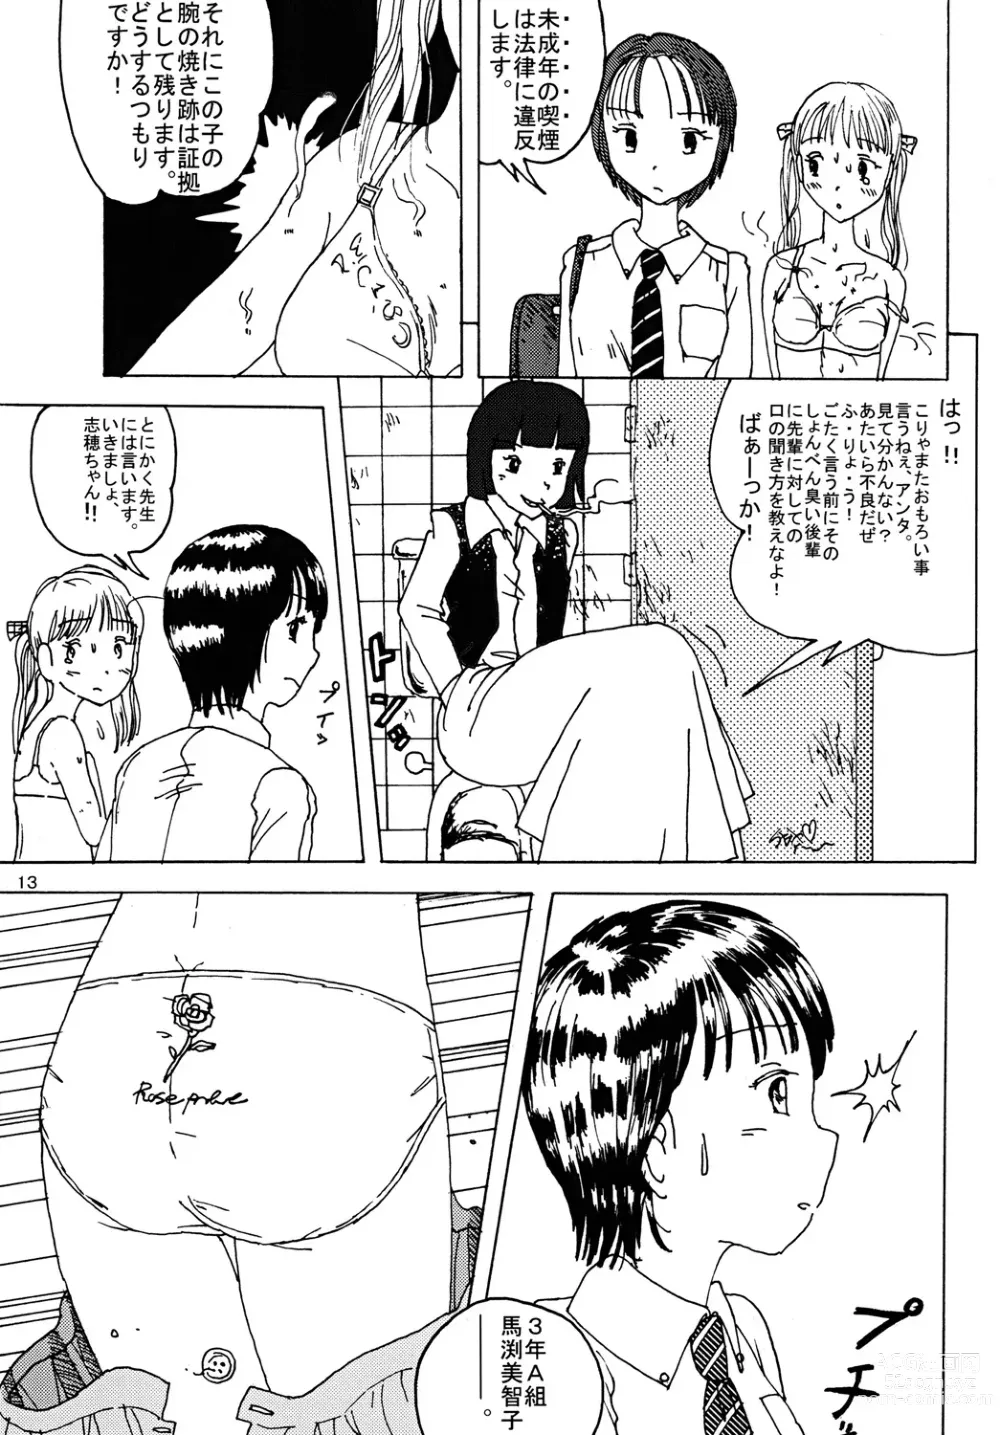 Page 12 of doujinshi Mune Ippai no Dizzy